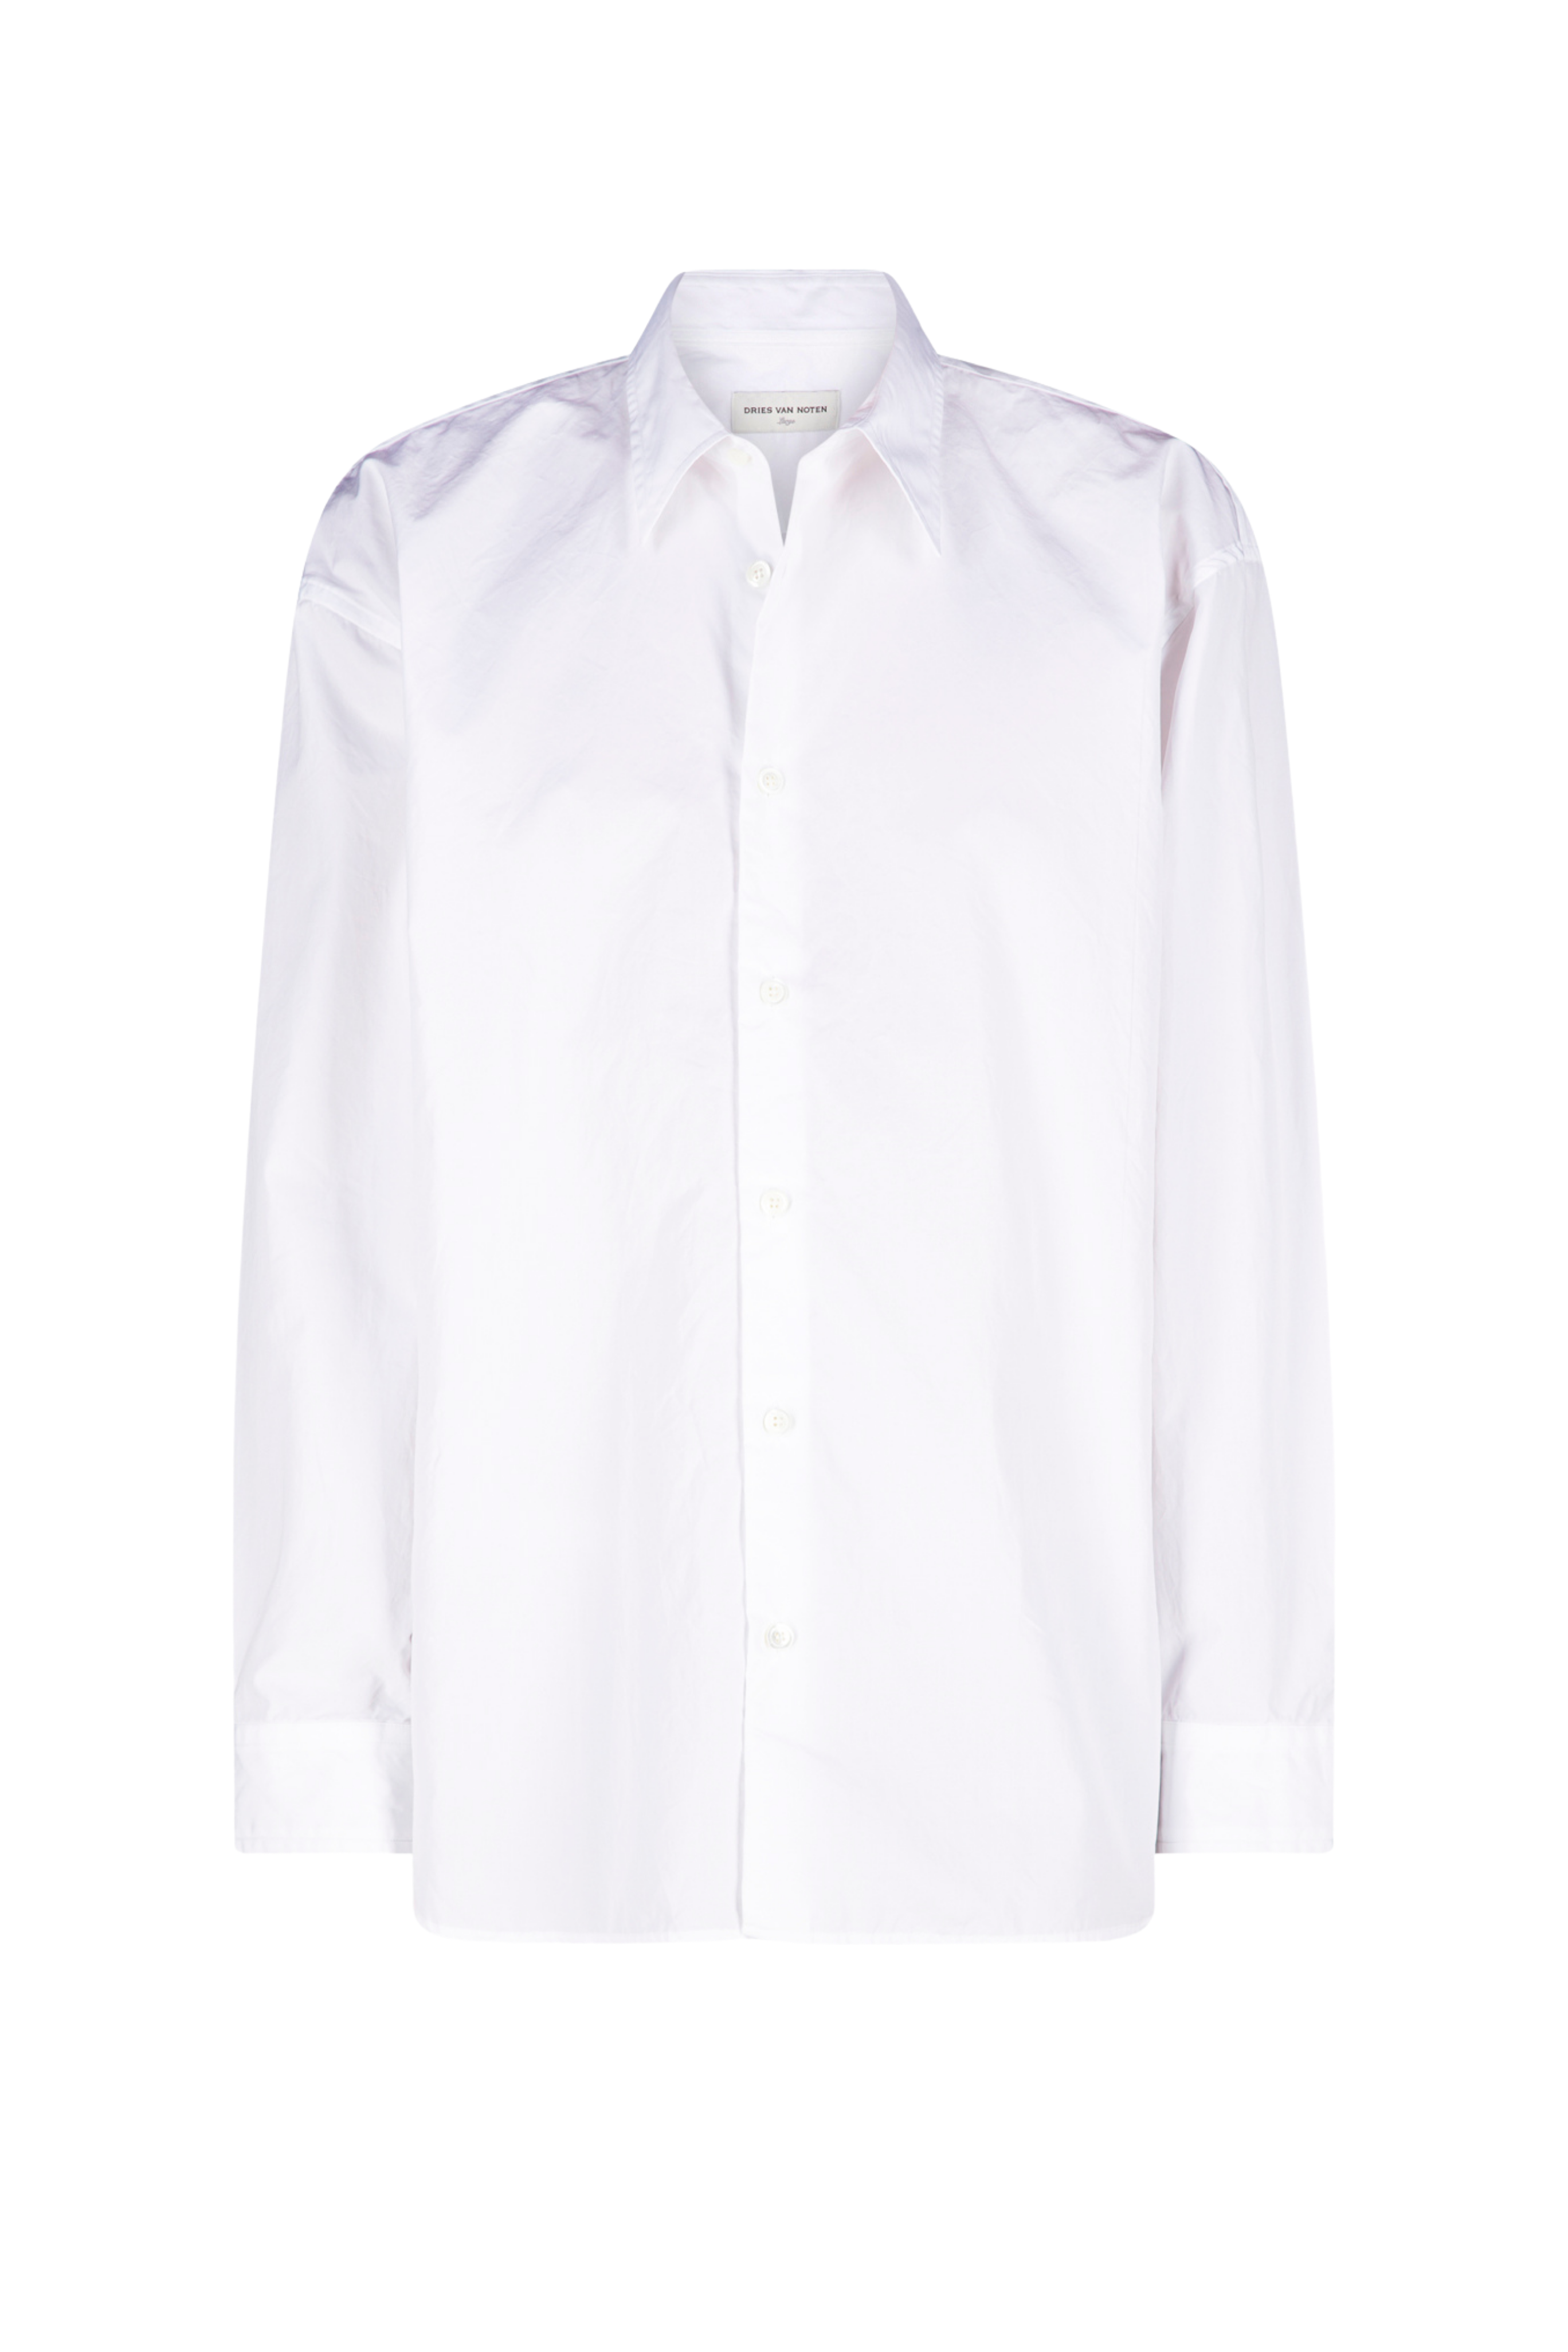 DRIES VAN NOTEN Men's Croom White Shirt